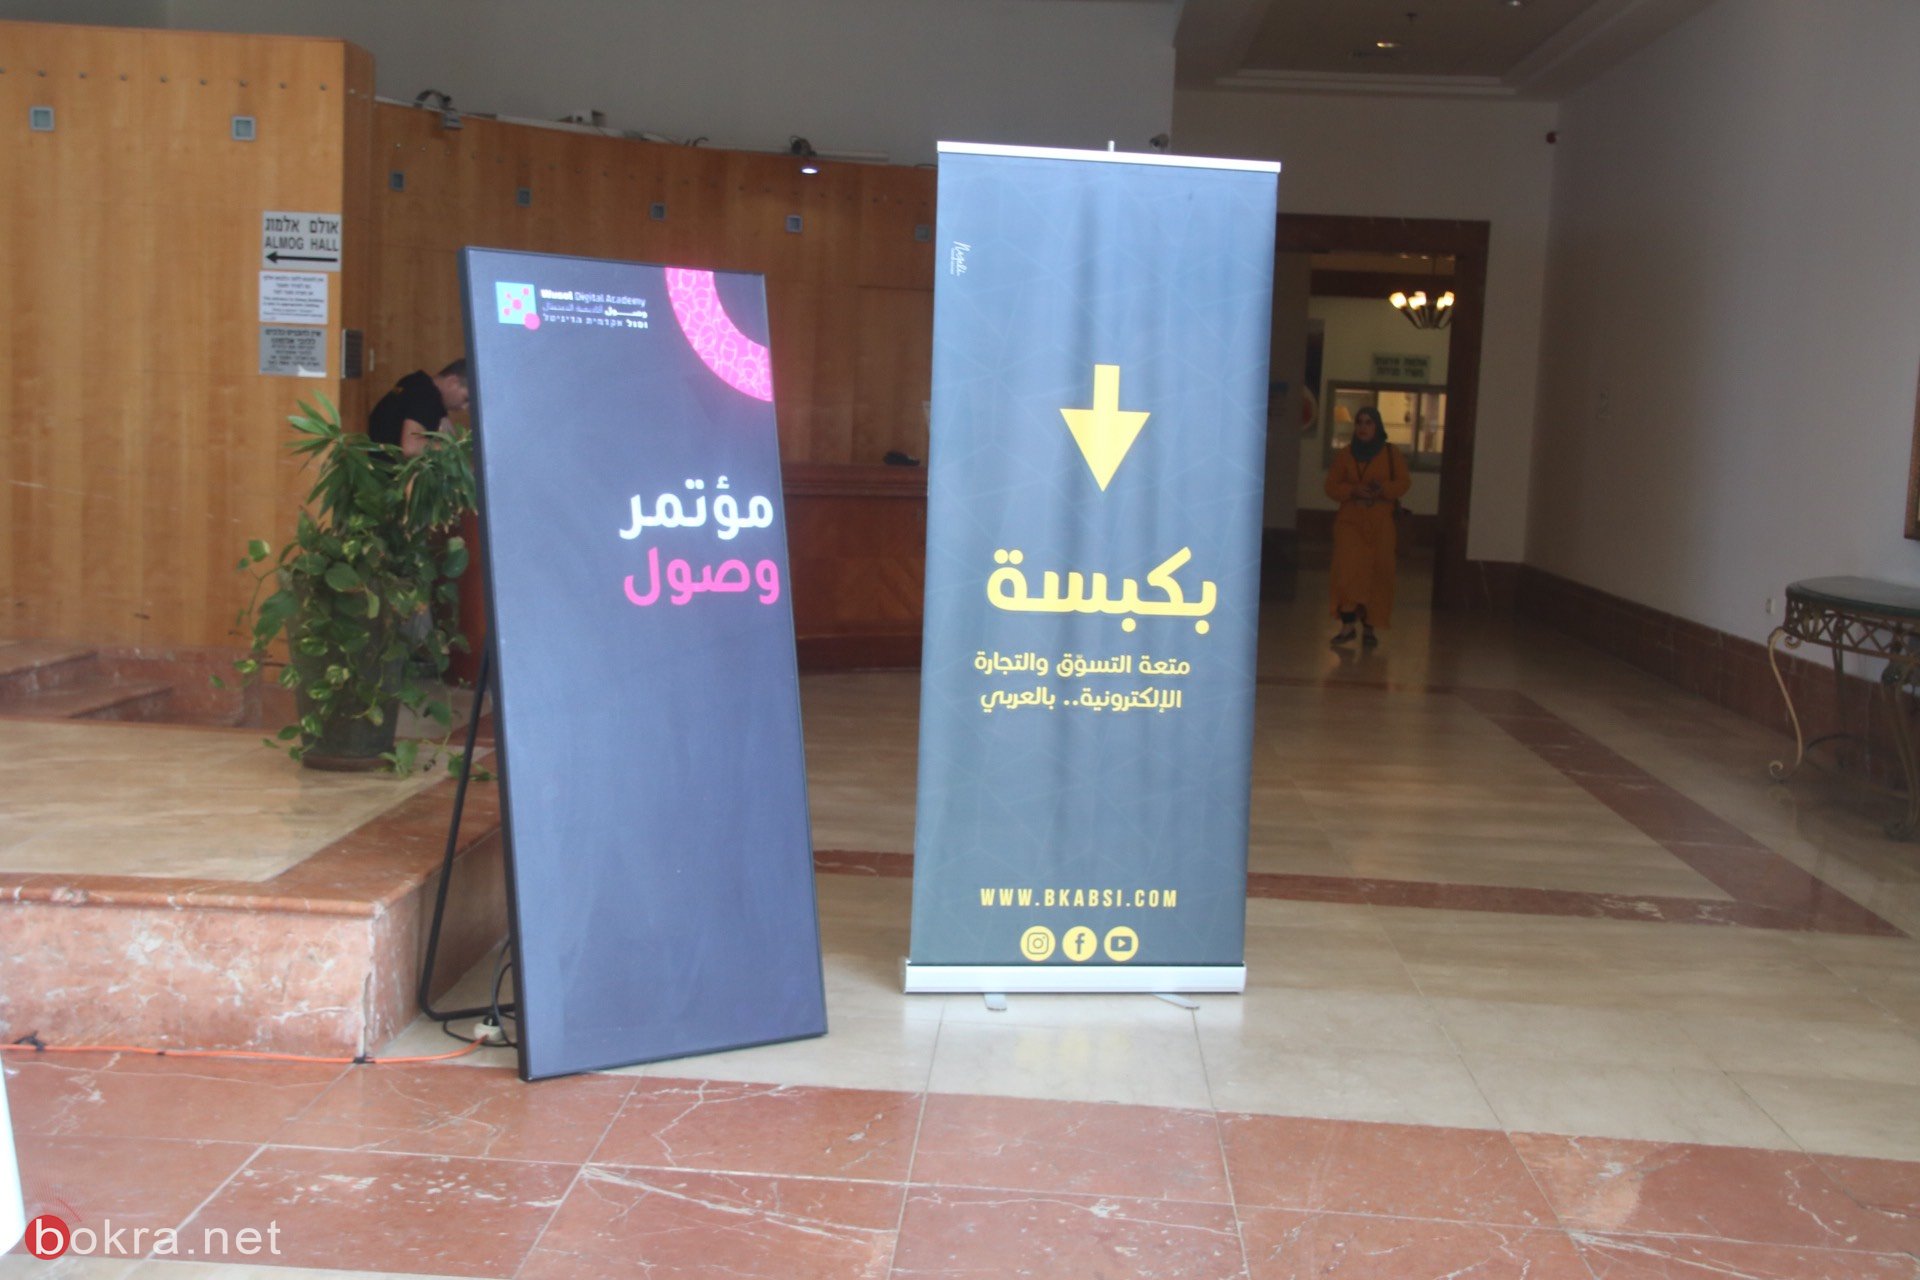 حيفا: مشاركة واسعة في مؤتمر "وصول" حول آخر التطورات في قنوات التسويق الرقمي-8